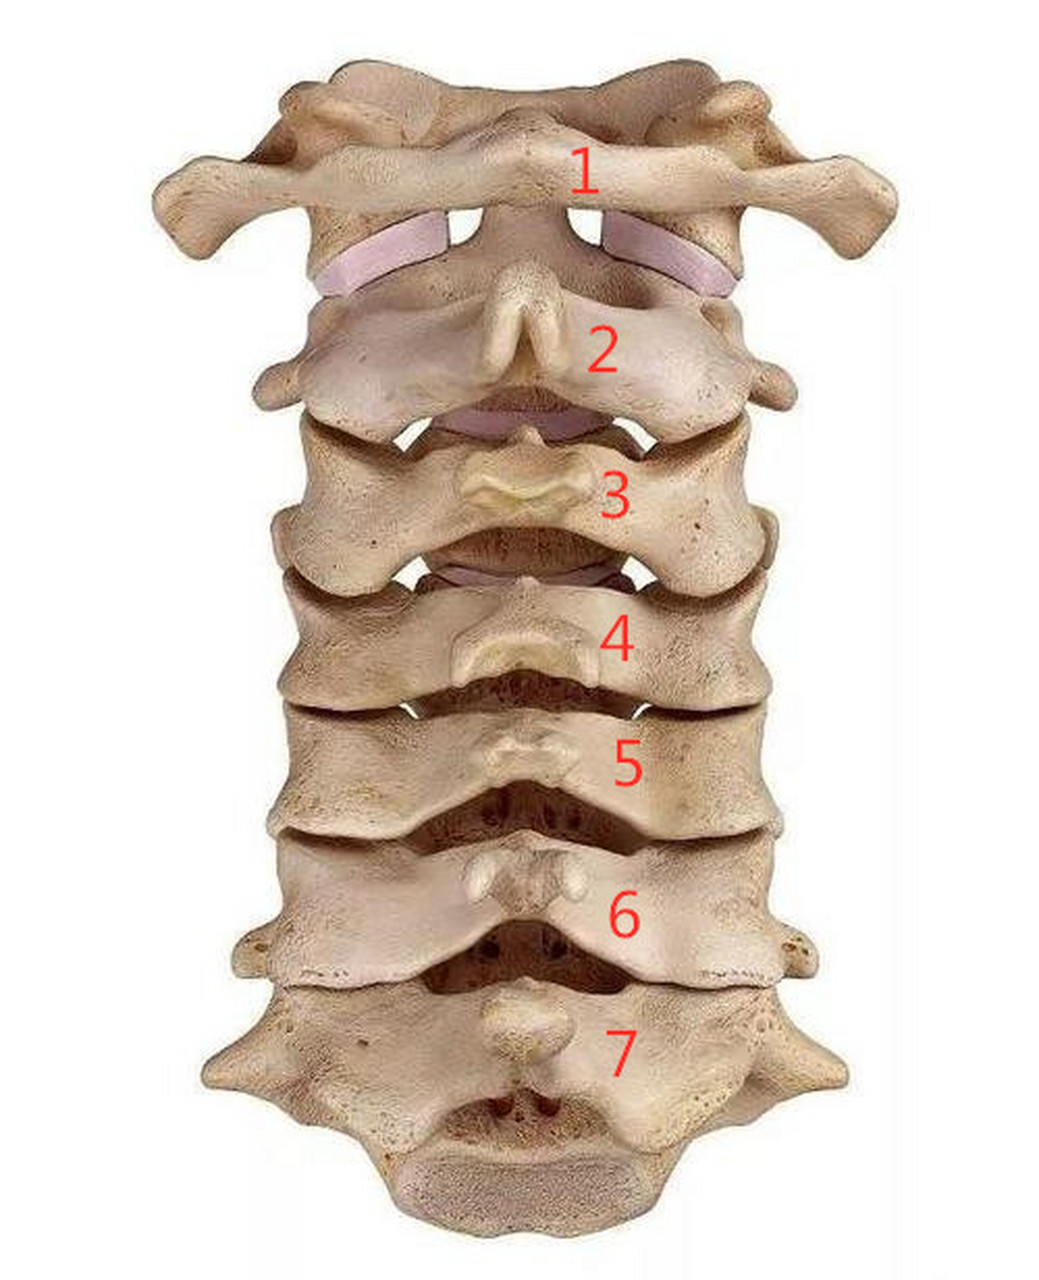 隆椎是第几颈椎图片